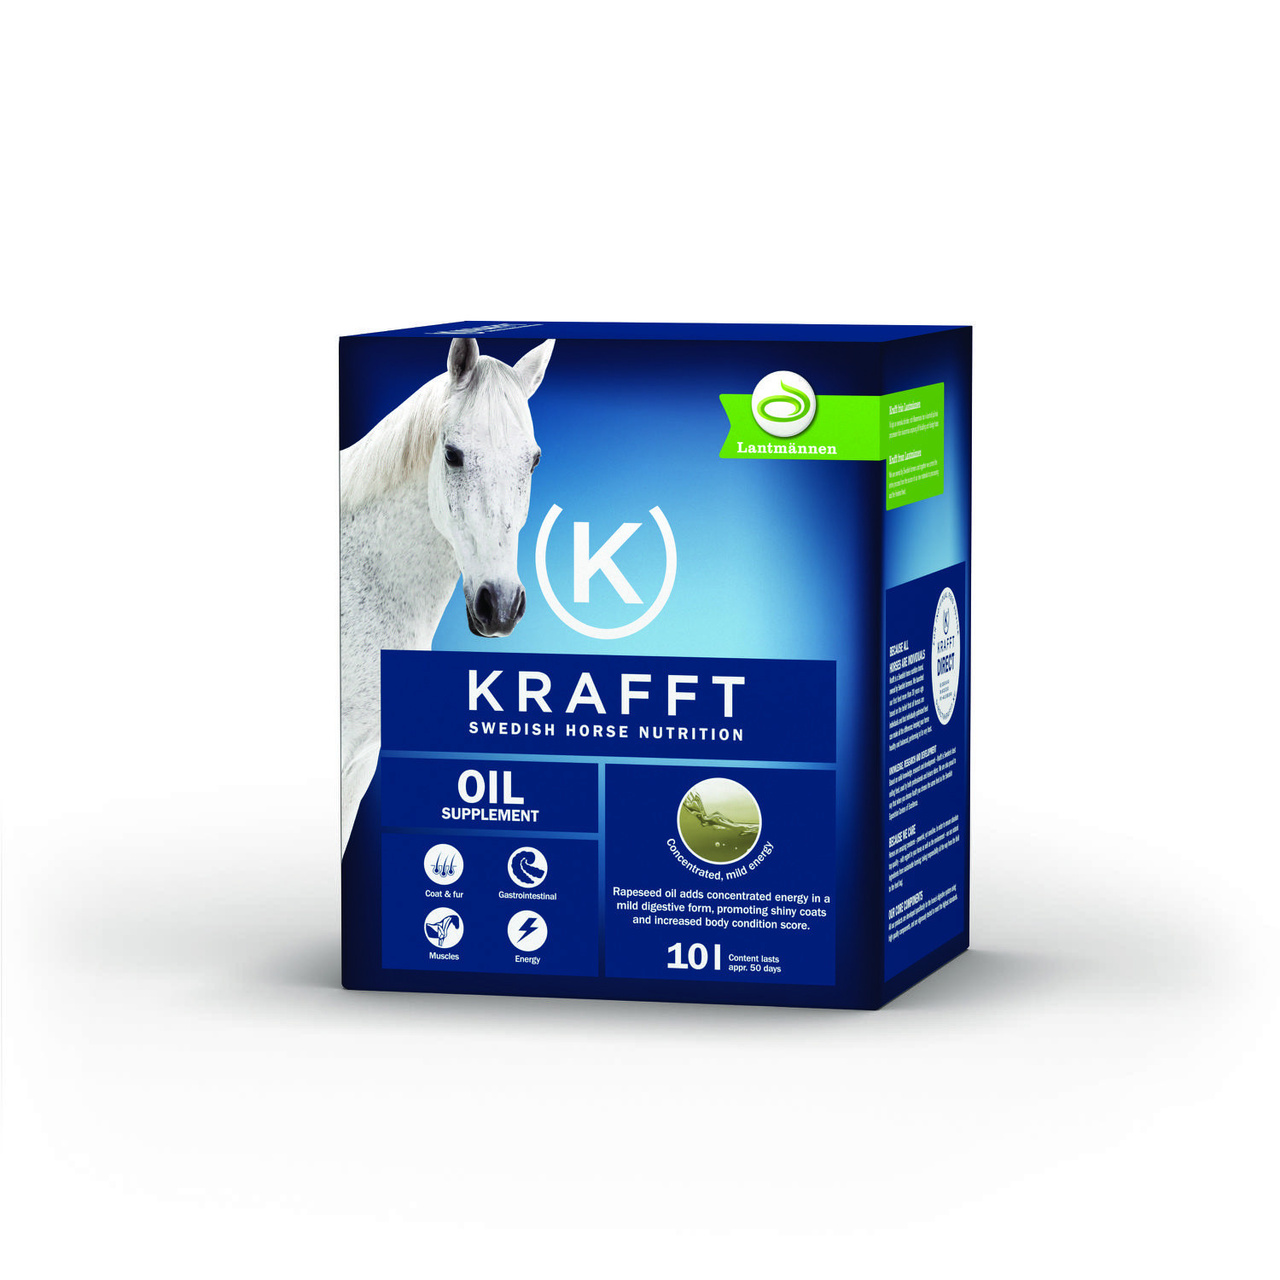 Krafft oil 10l